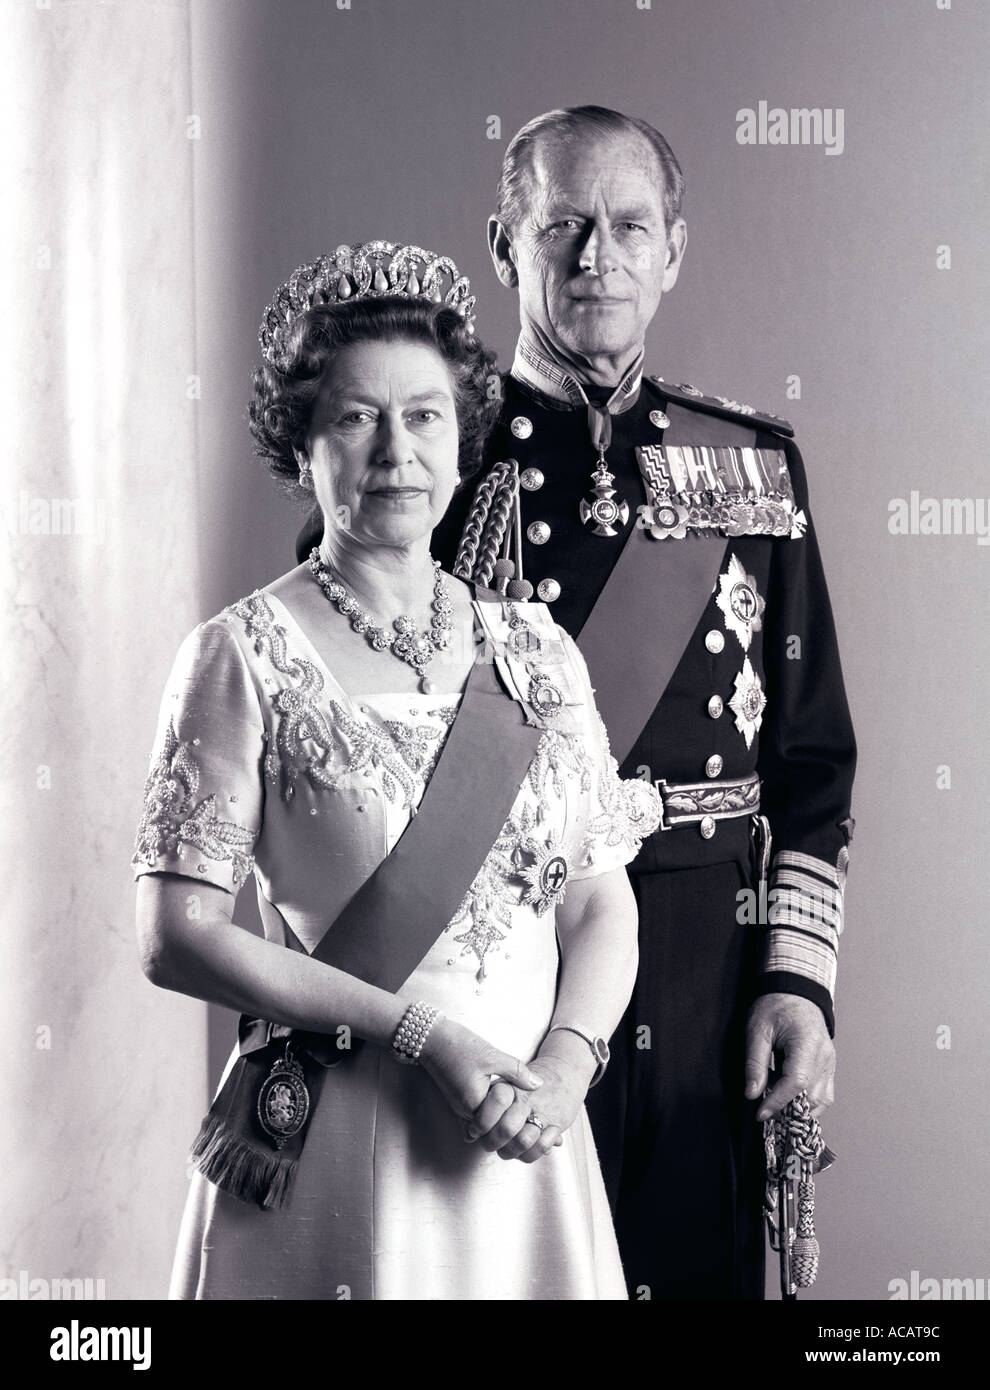 H M Reina Isabel 2H R H El Príncipe Felipe, Duque de Edimburgo, el Palacio de Buckingham 1985 vestidos formales Foto de stock